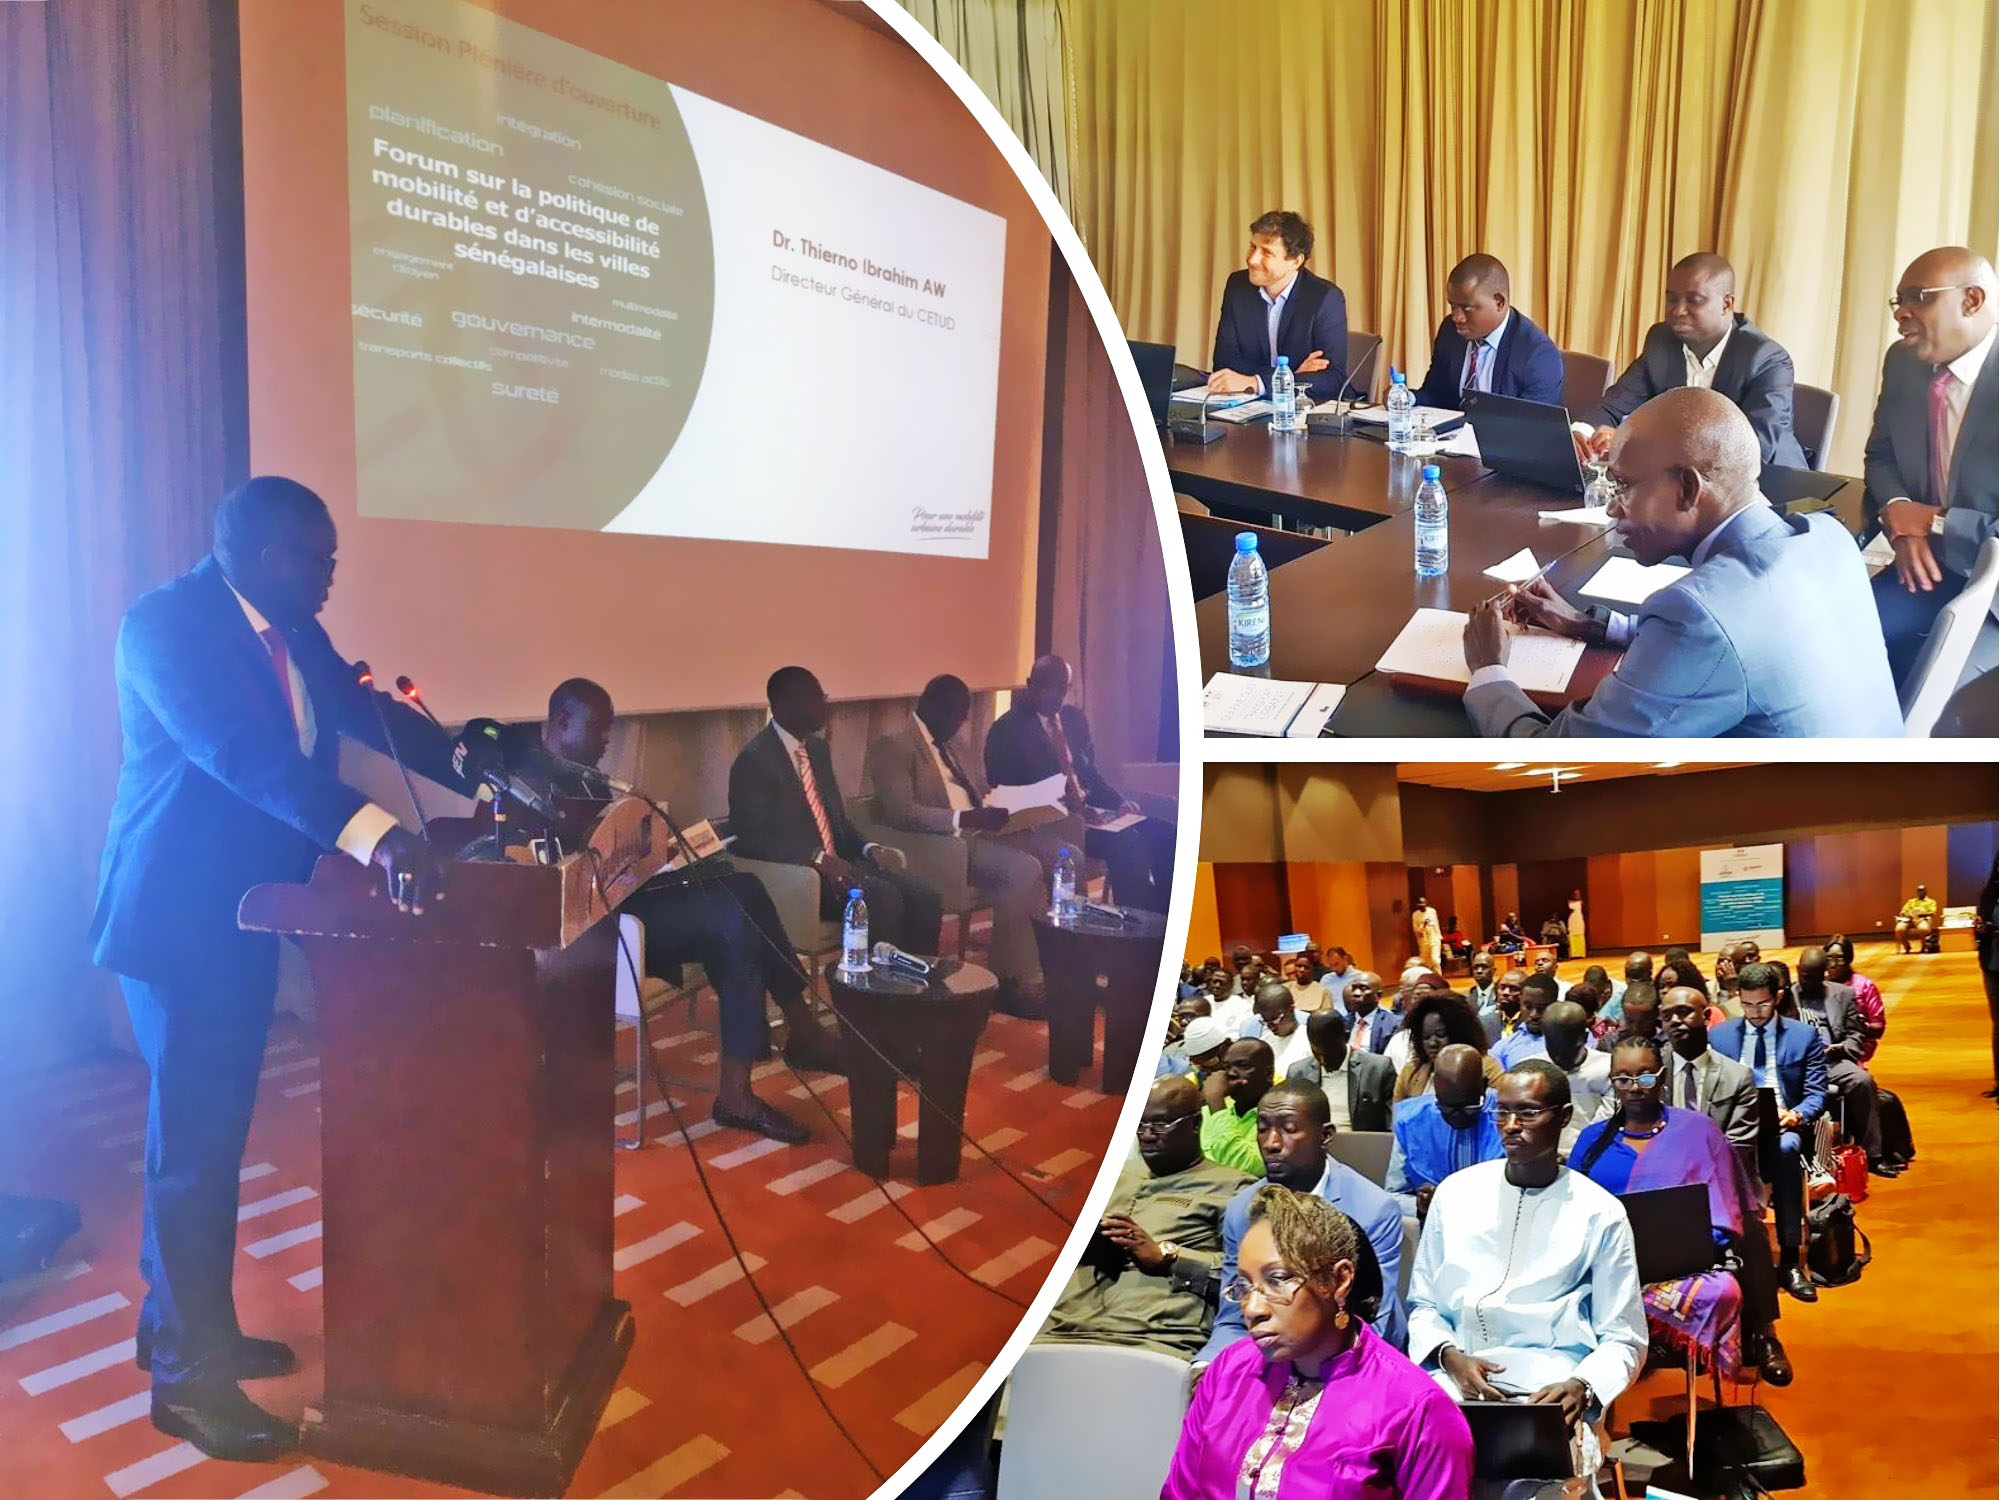 Forum sur la politique de mobilité et d’accessibilité durables dans les villes sénégalaises